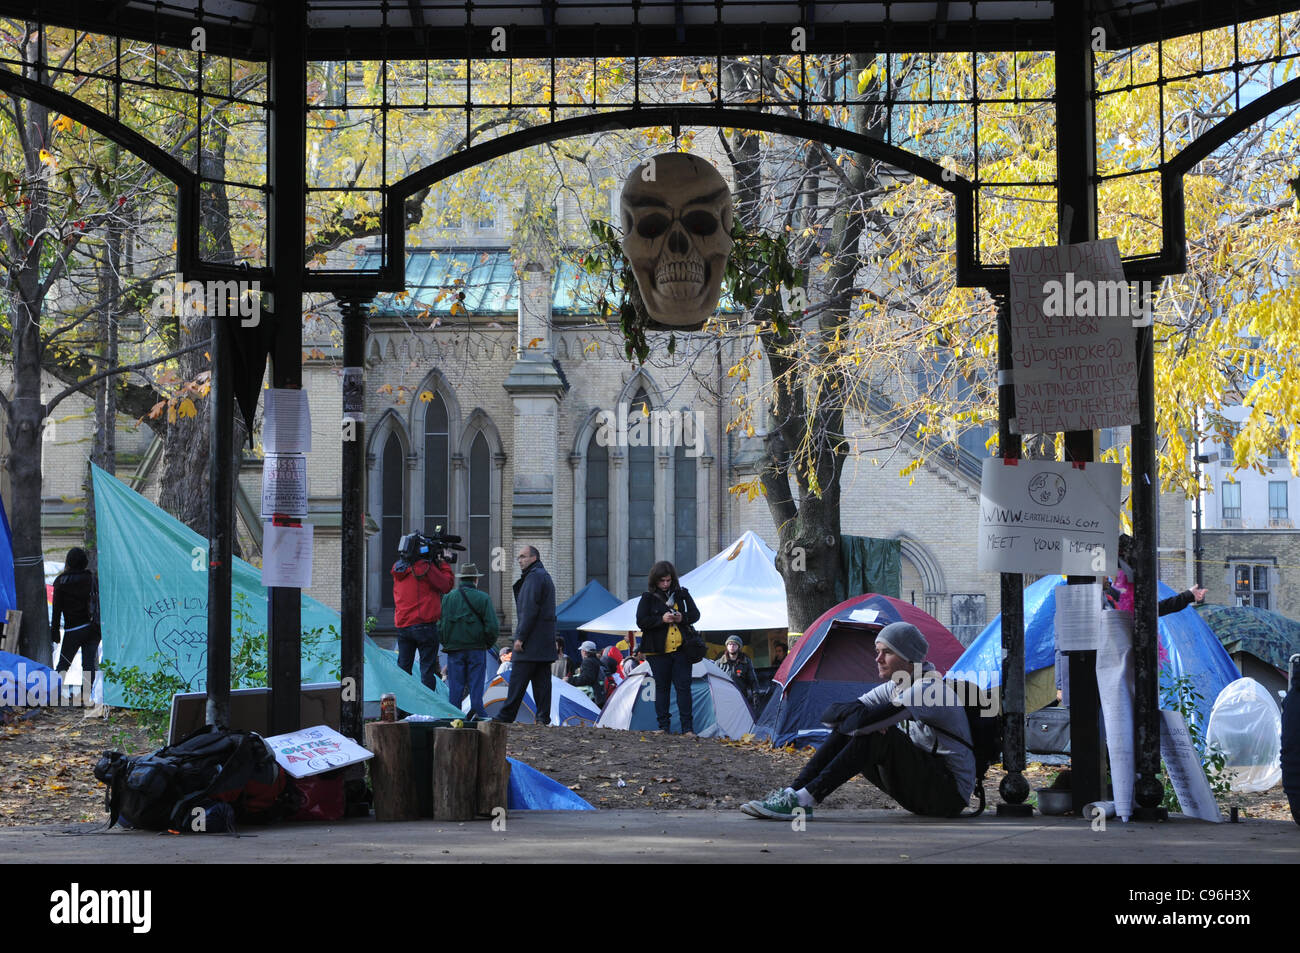 Mattina di Novembre 15, 2011, la occupano Toronto protesta tenda Camp a St James Park e un mese a. Questa mattina i manifestanti hanno servito le comunicazioni di sfratto chiedendo loro di lasciare il parco dalle 12:01am Novembre 16, 2011. Foto Stock